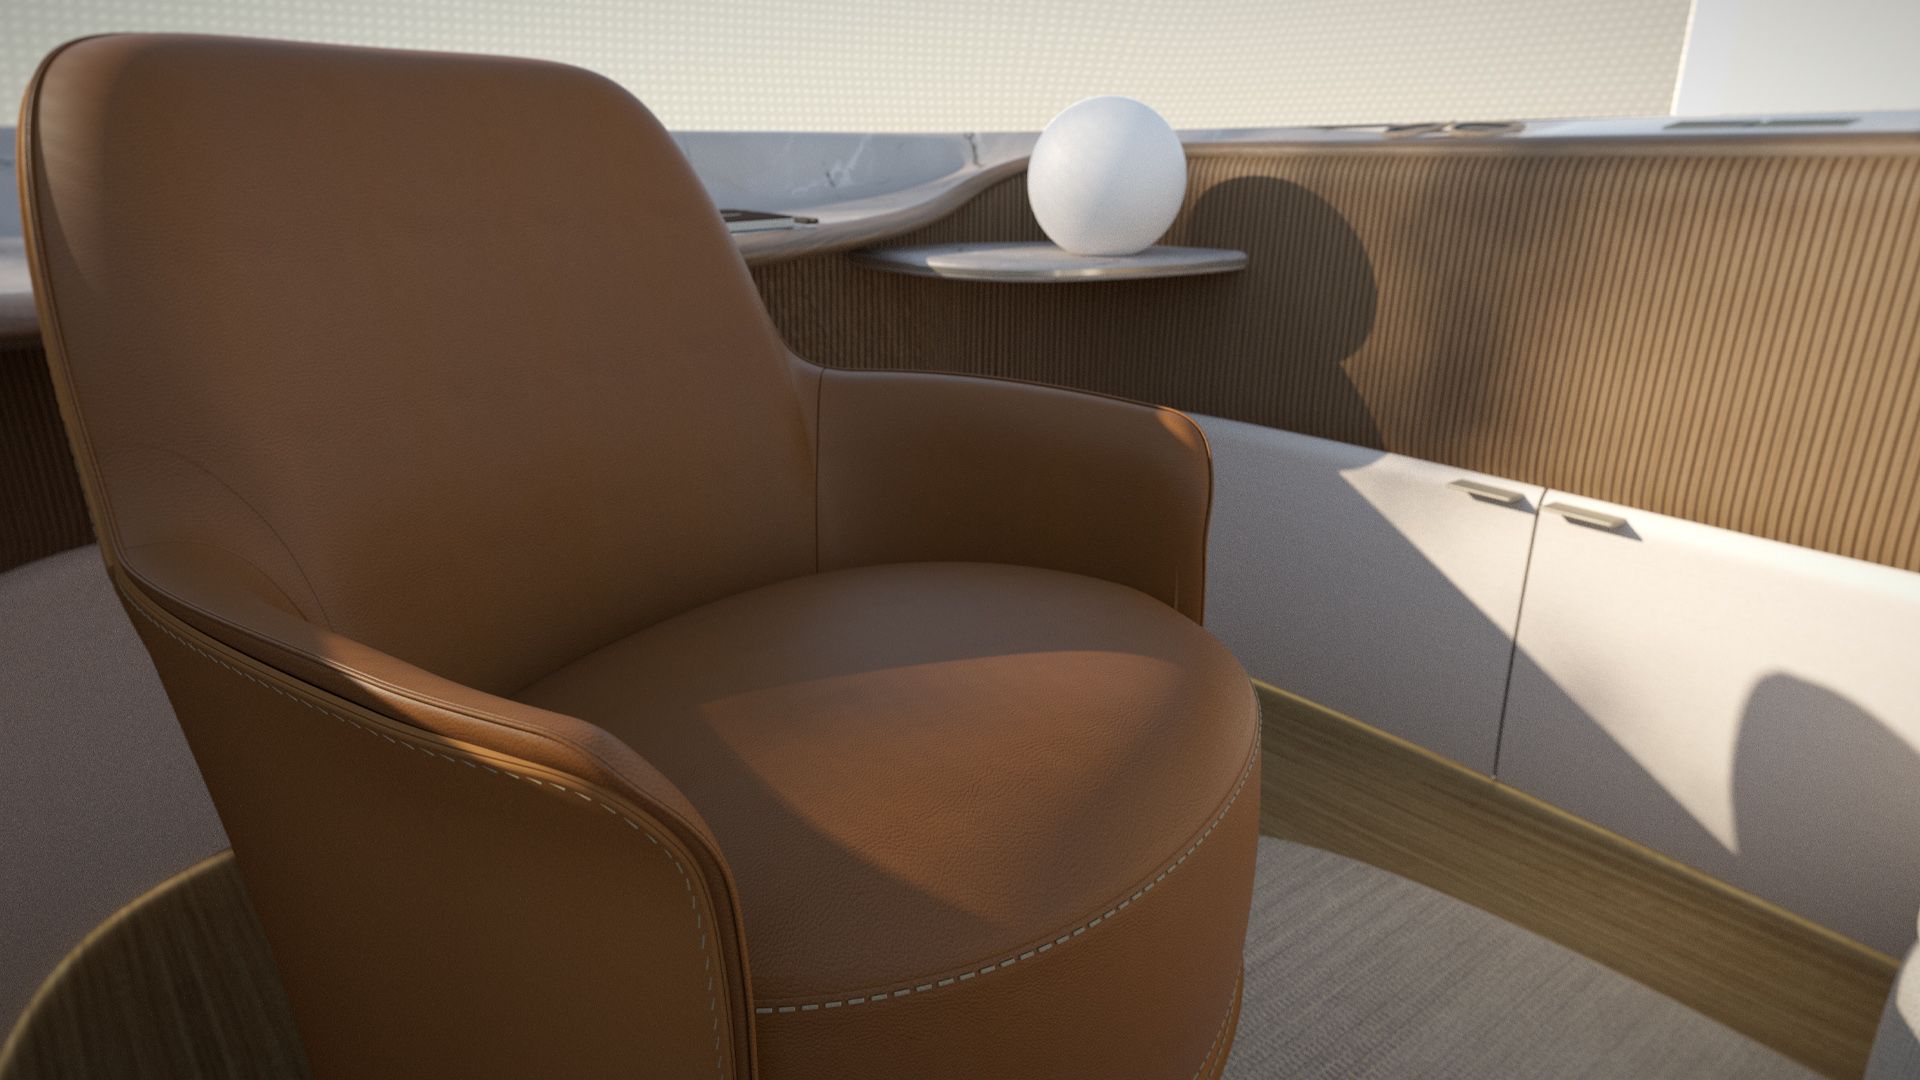 Poliform'un iç tasarımında kahverengi bir koltuk görülüyor.